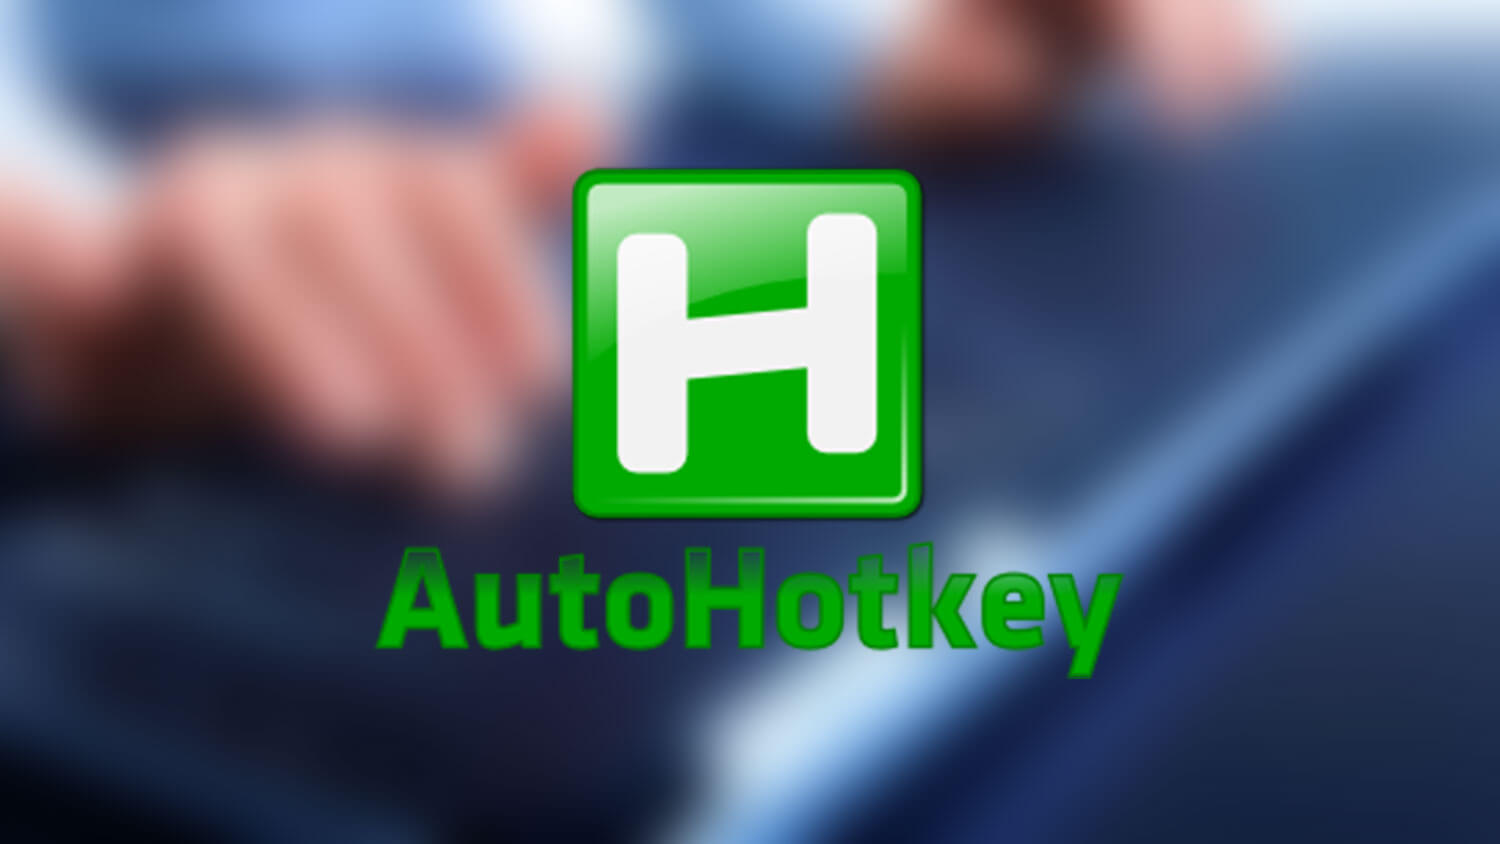 download AutoHotkey 2.0.3 free